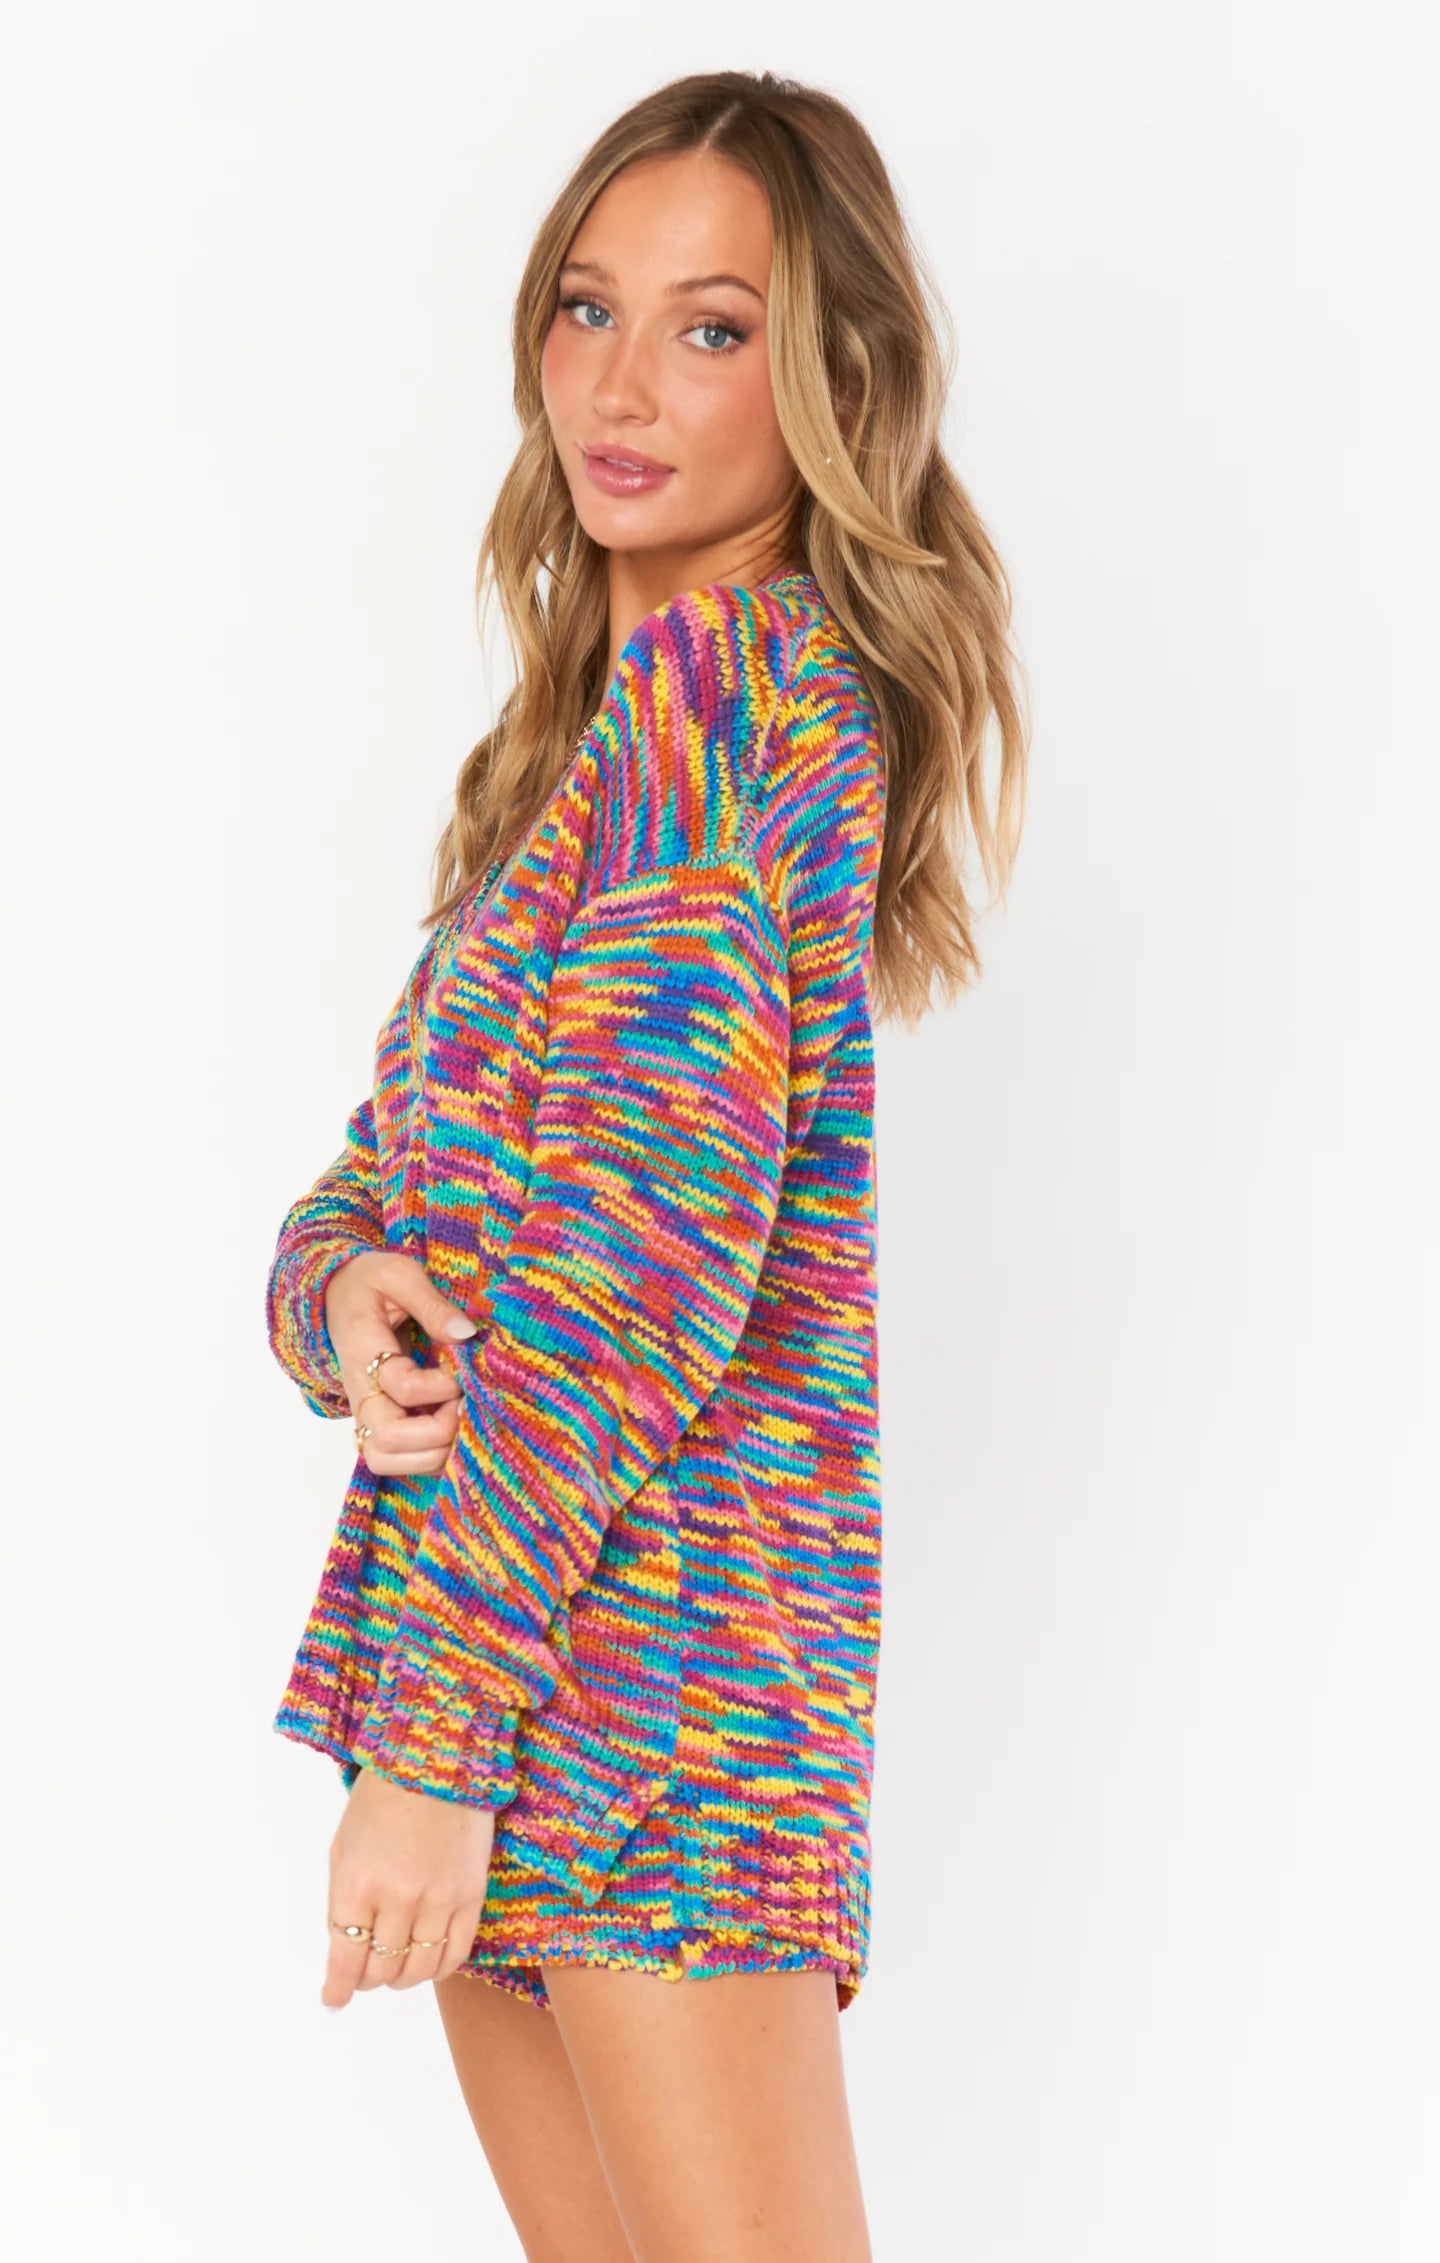 Boardwalk Shorts - Colorful Space Dye knit